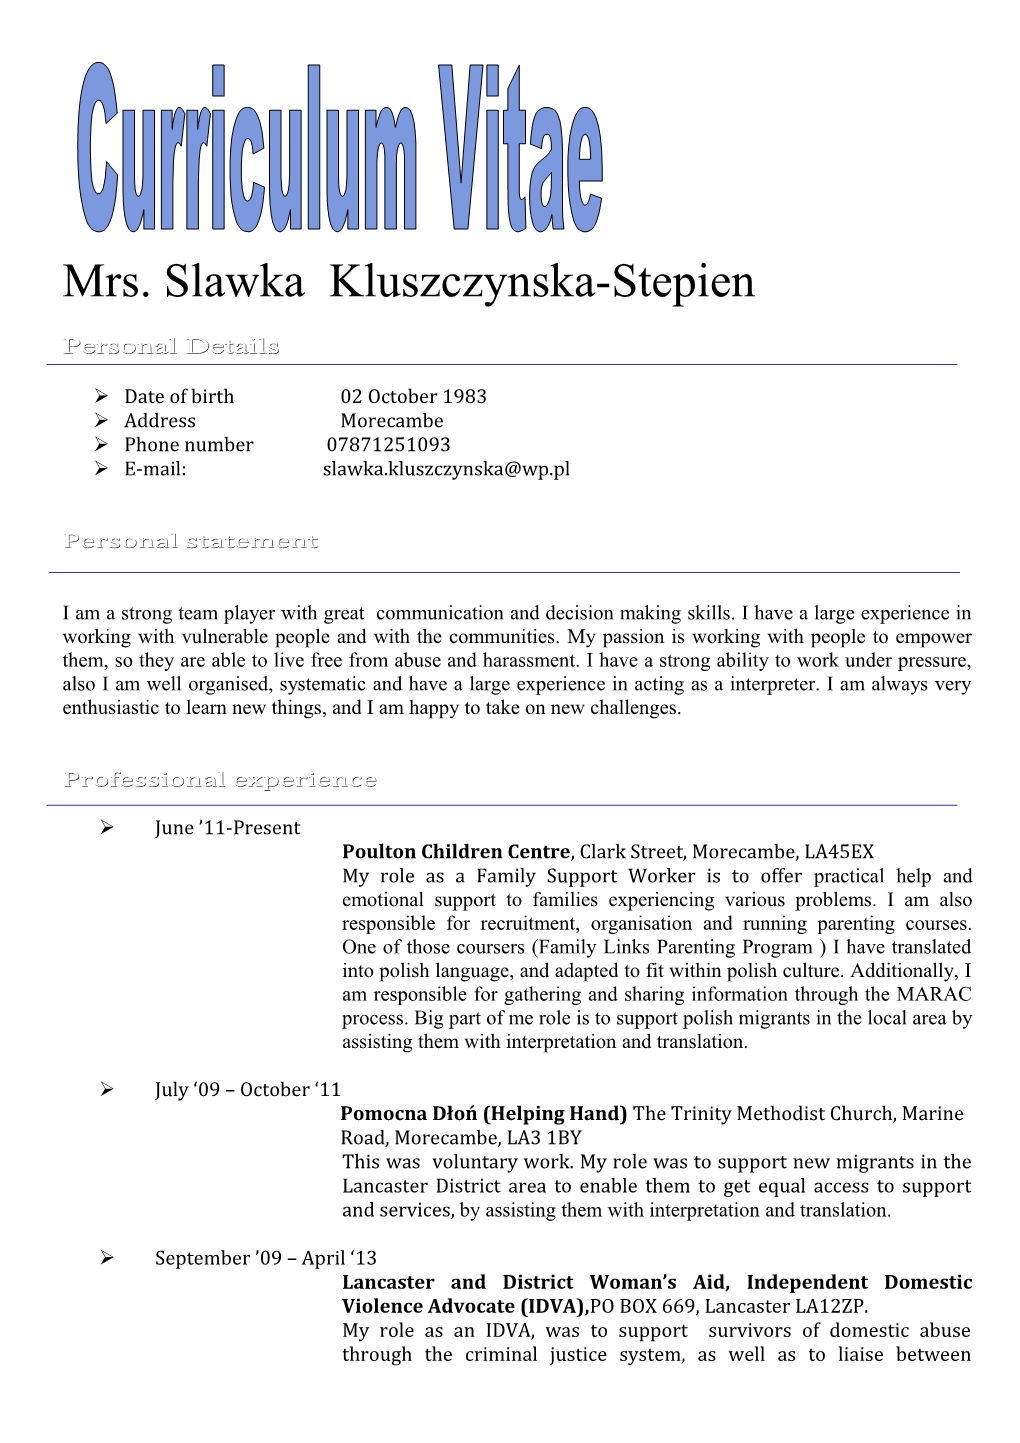 Mrs. Slawka Kluszczynska-Stepien